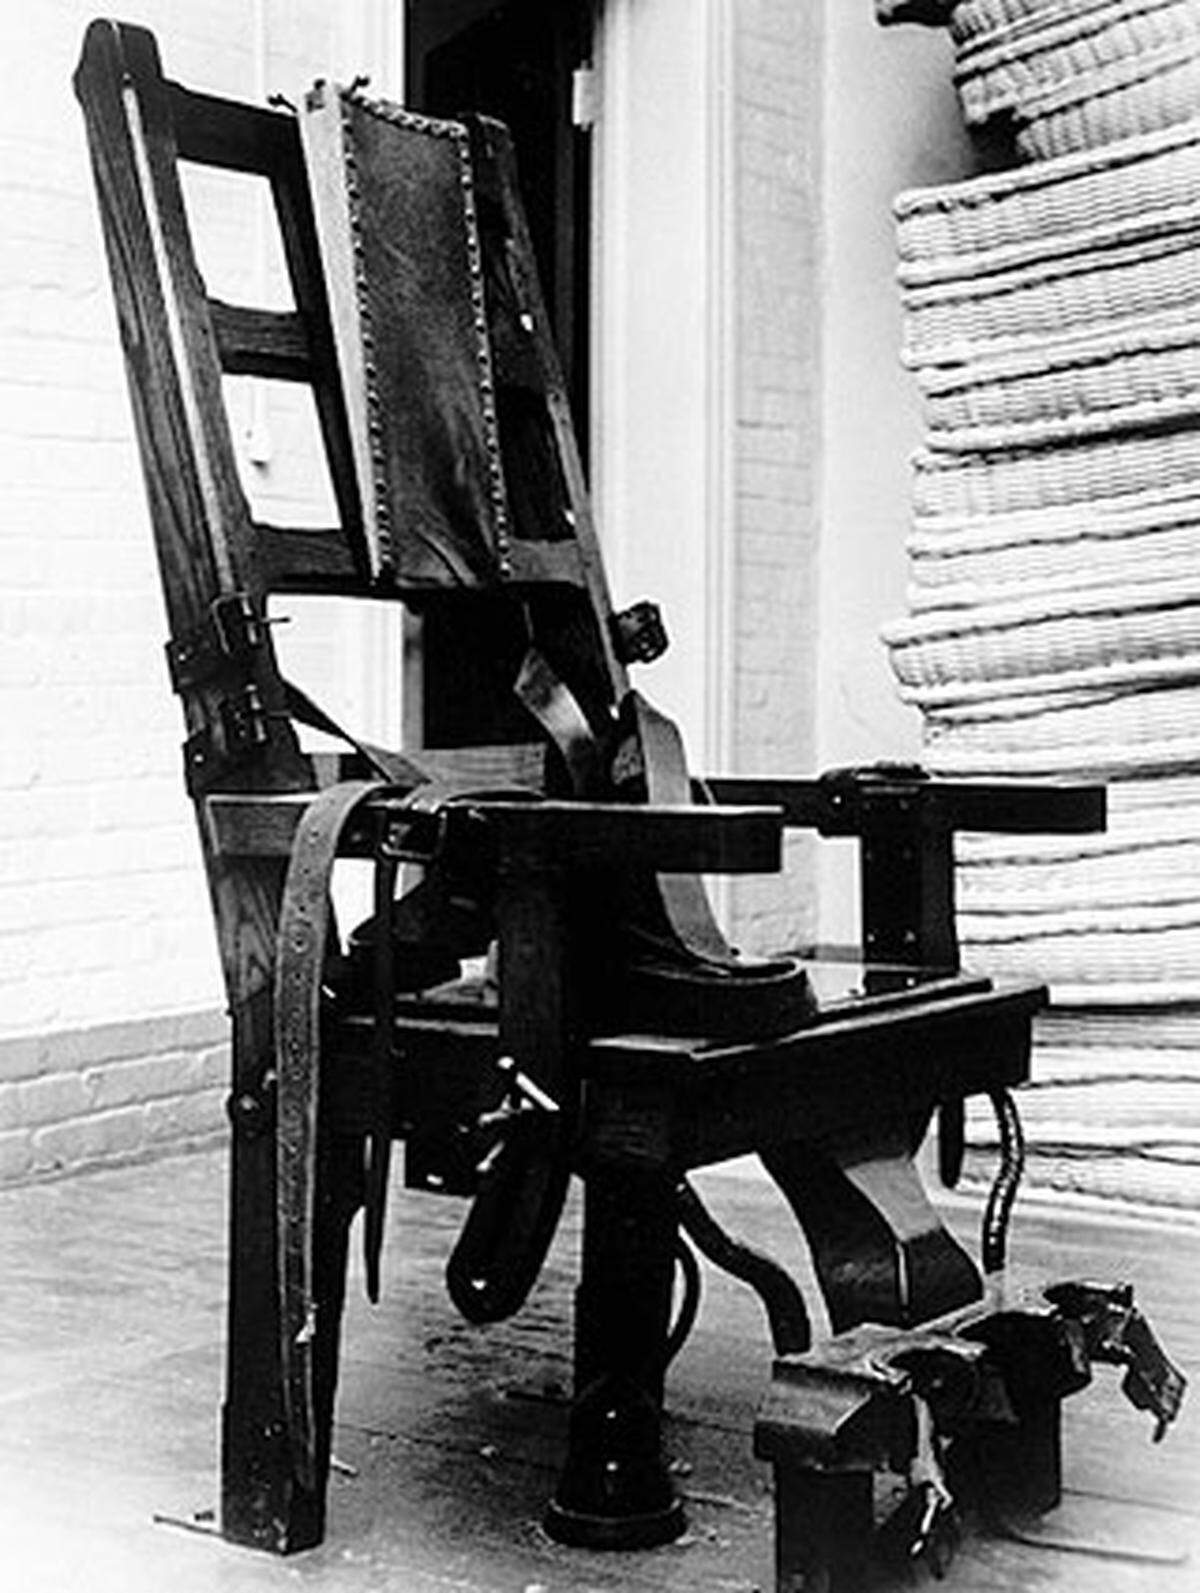 Vor mehr als vierzig Jahren, am 7. Februar 1968, wurde mit einem einstimmigen Beschluss des Nationalrates die Todesstrafe in Österreich völlig abgeschafft. Zwei Ausnahmen blieben bestehen...